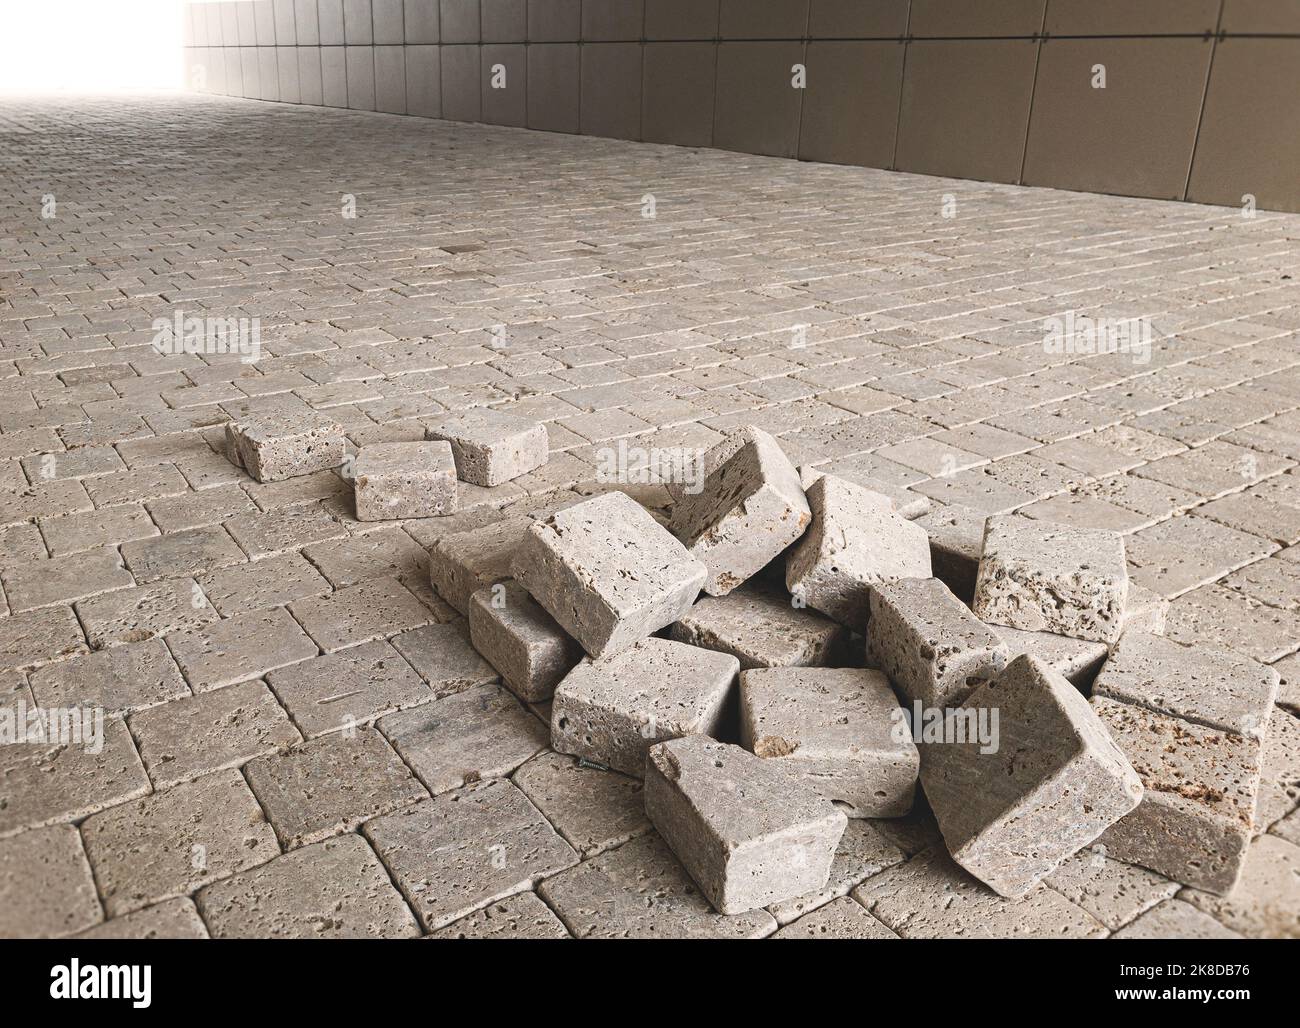 pavement pavestone paving bricks stone bricks placing, street sidewalk works Stock Photo